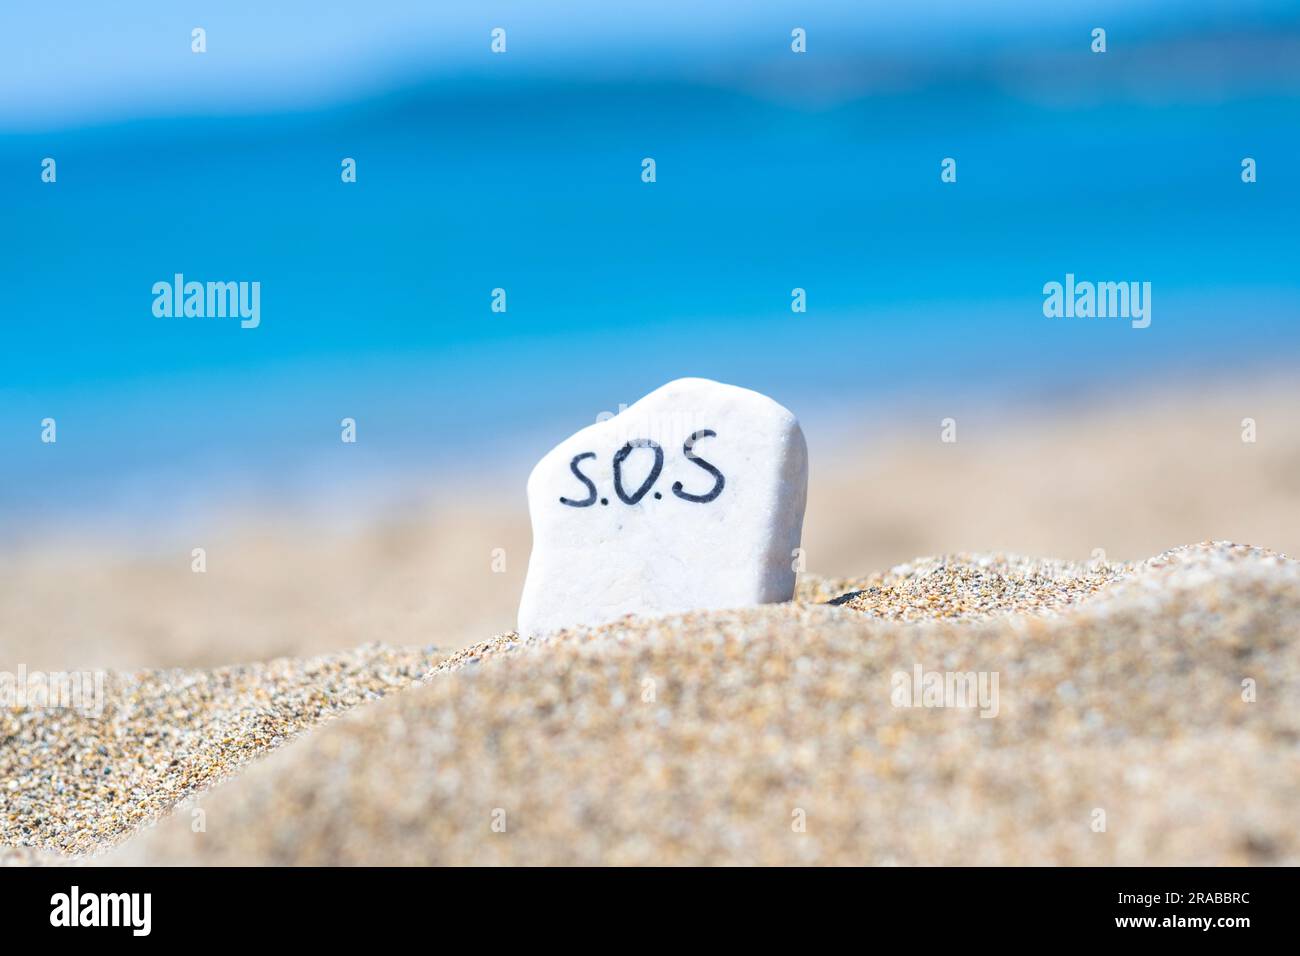 SOS - das Wort, das auf einem Stein im Sand am Strand vor dem Hintergrund des türkisfarbenen Meeres zeichnet. Hilfe! Hilfe! Rette den Ozean. Ökologie und Umwelt Stockfoto